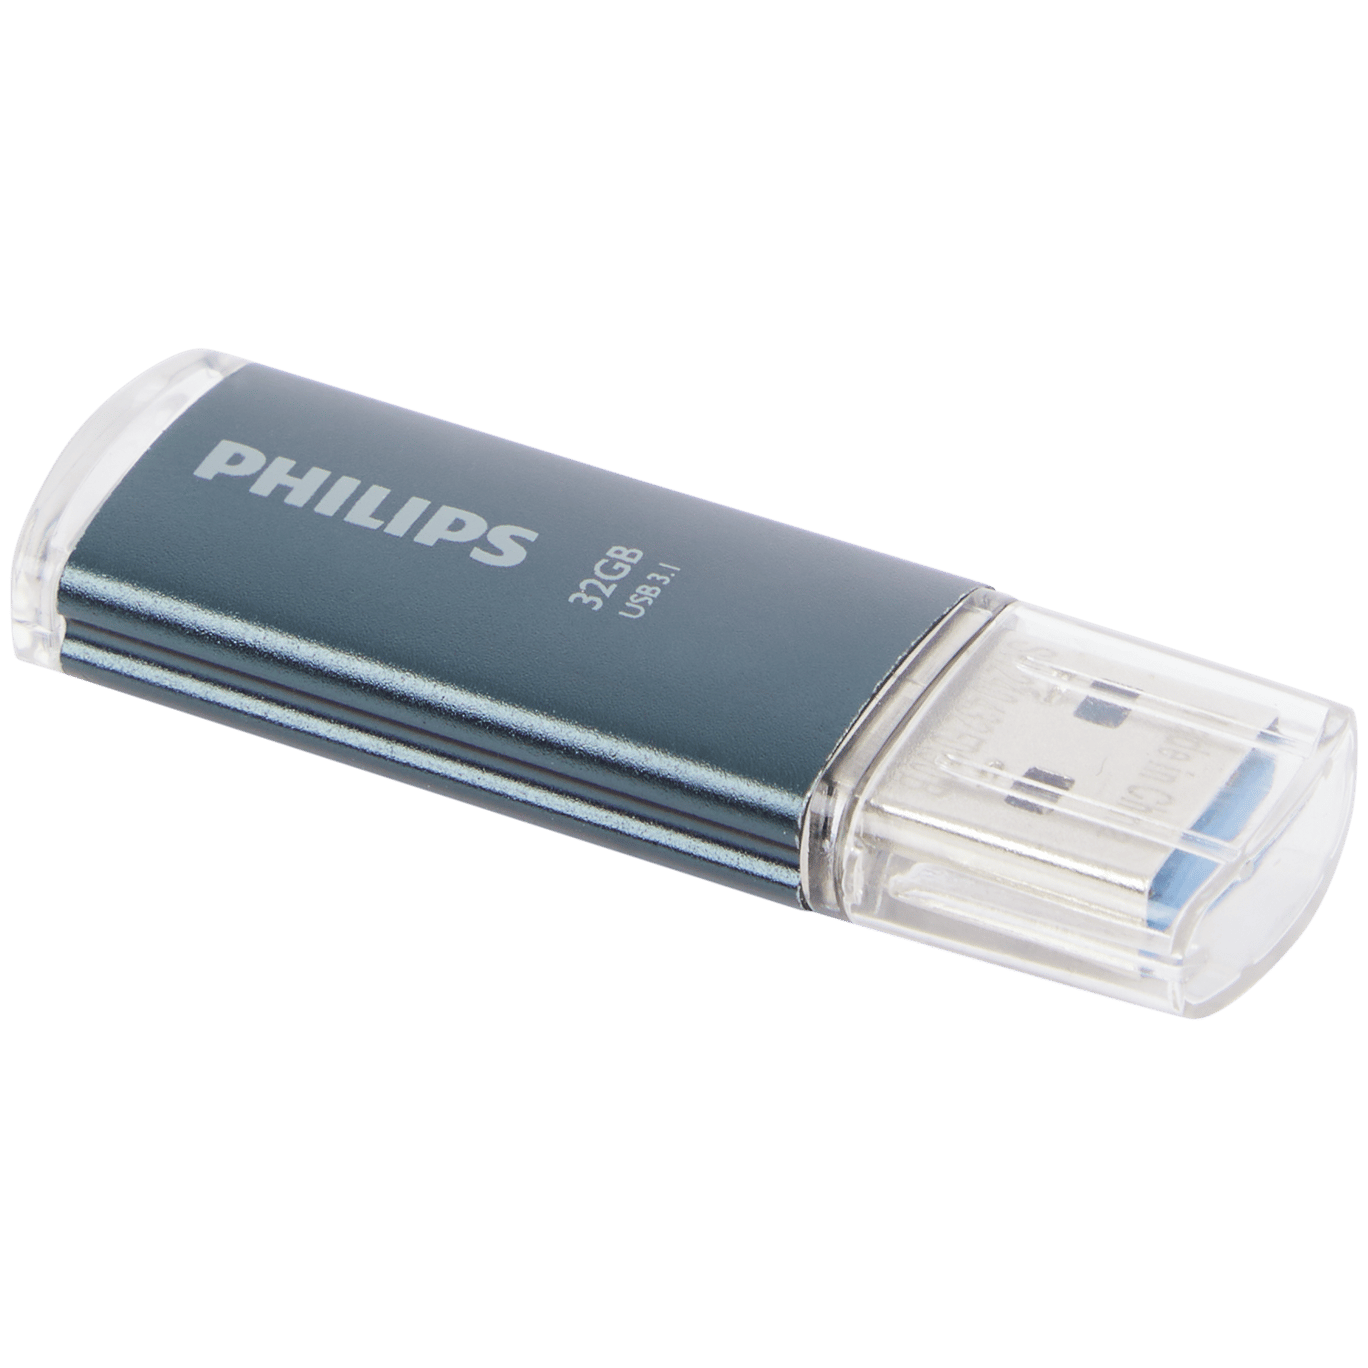 Philips USB-stick